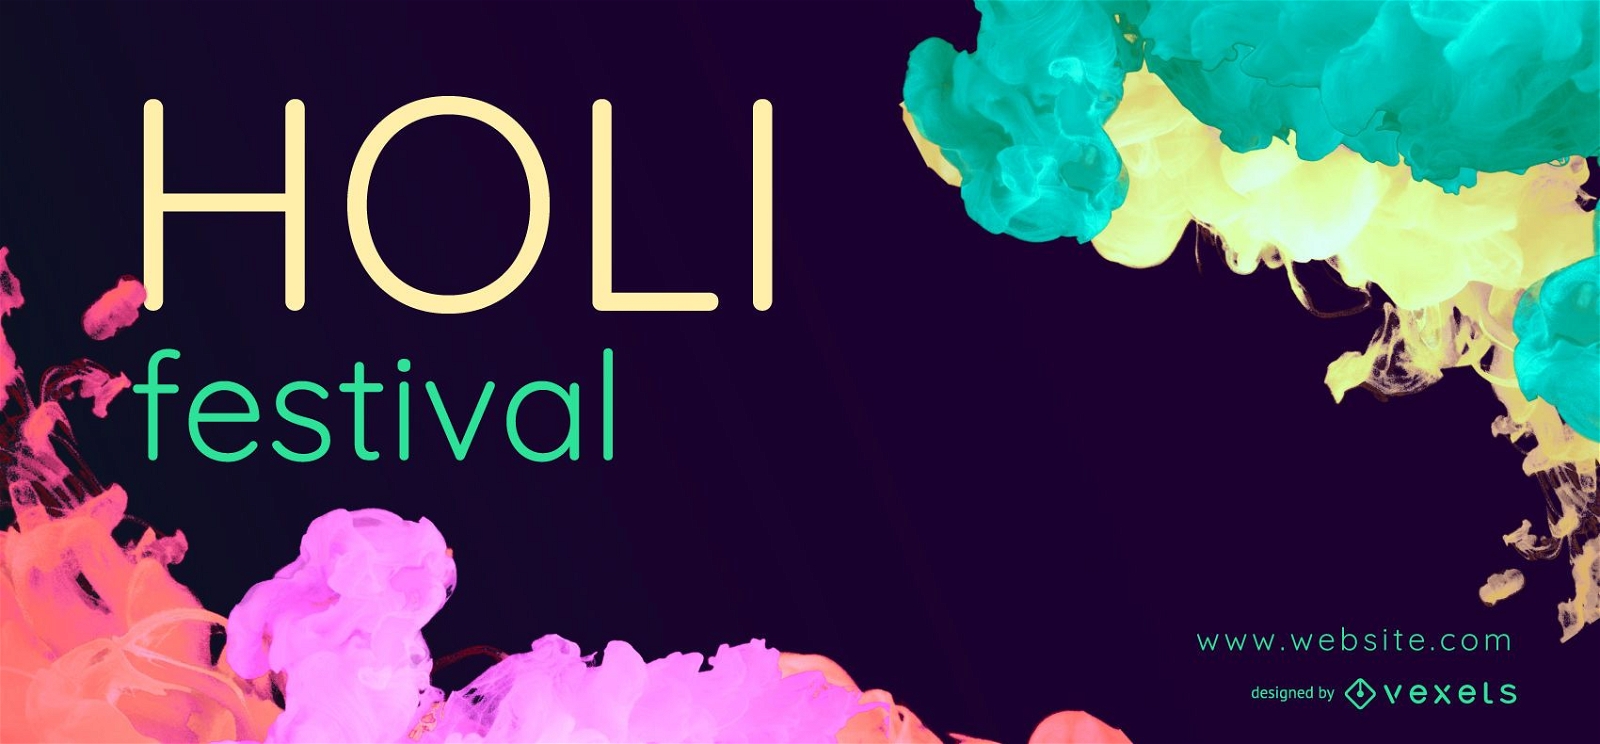 Holi Festival Web Banner Design